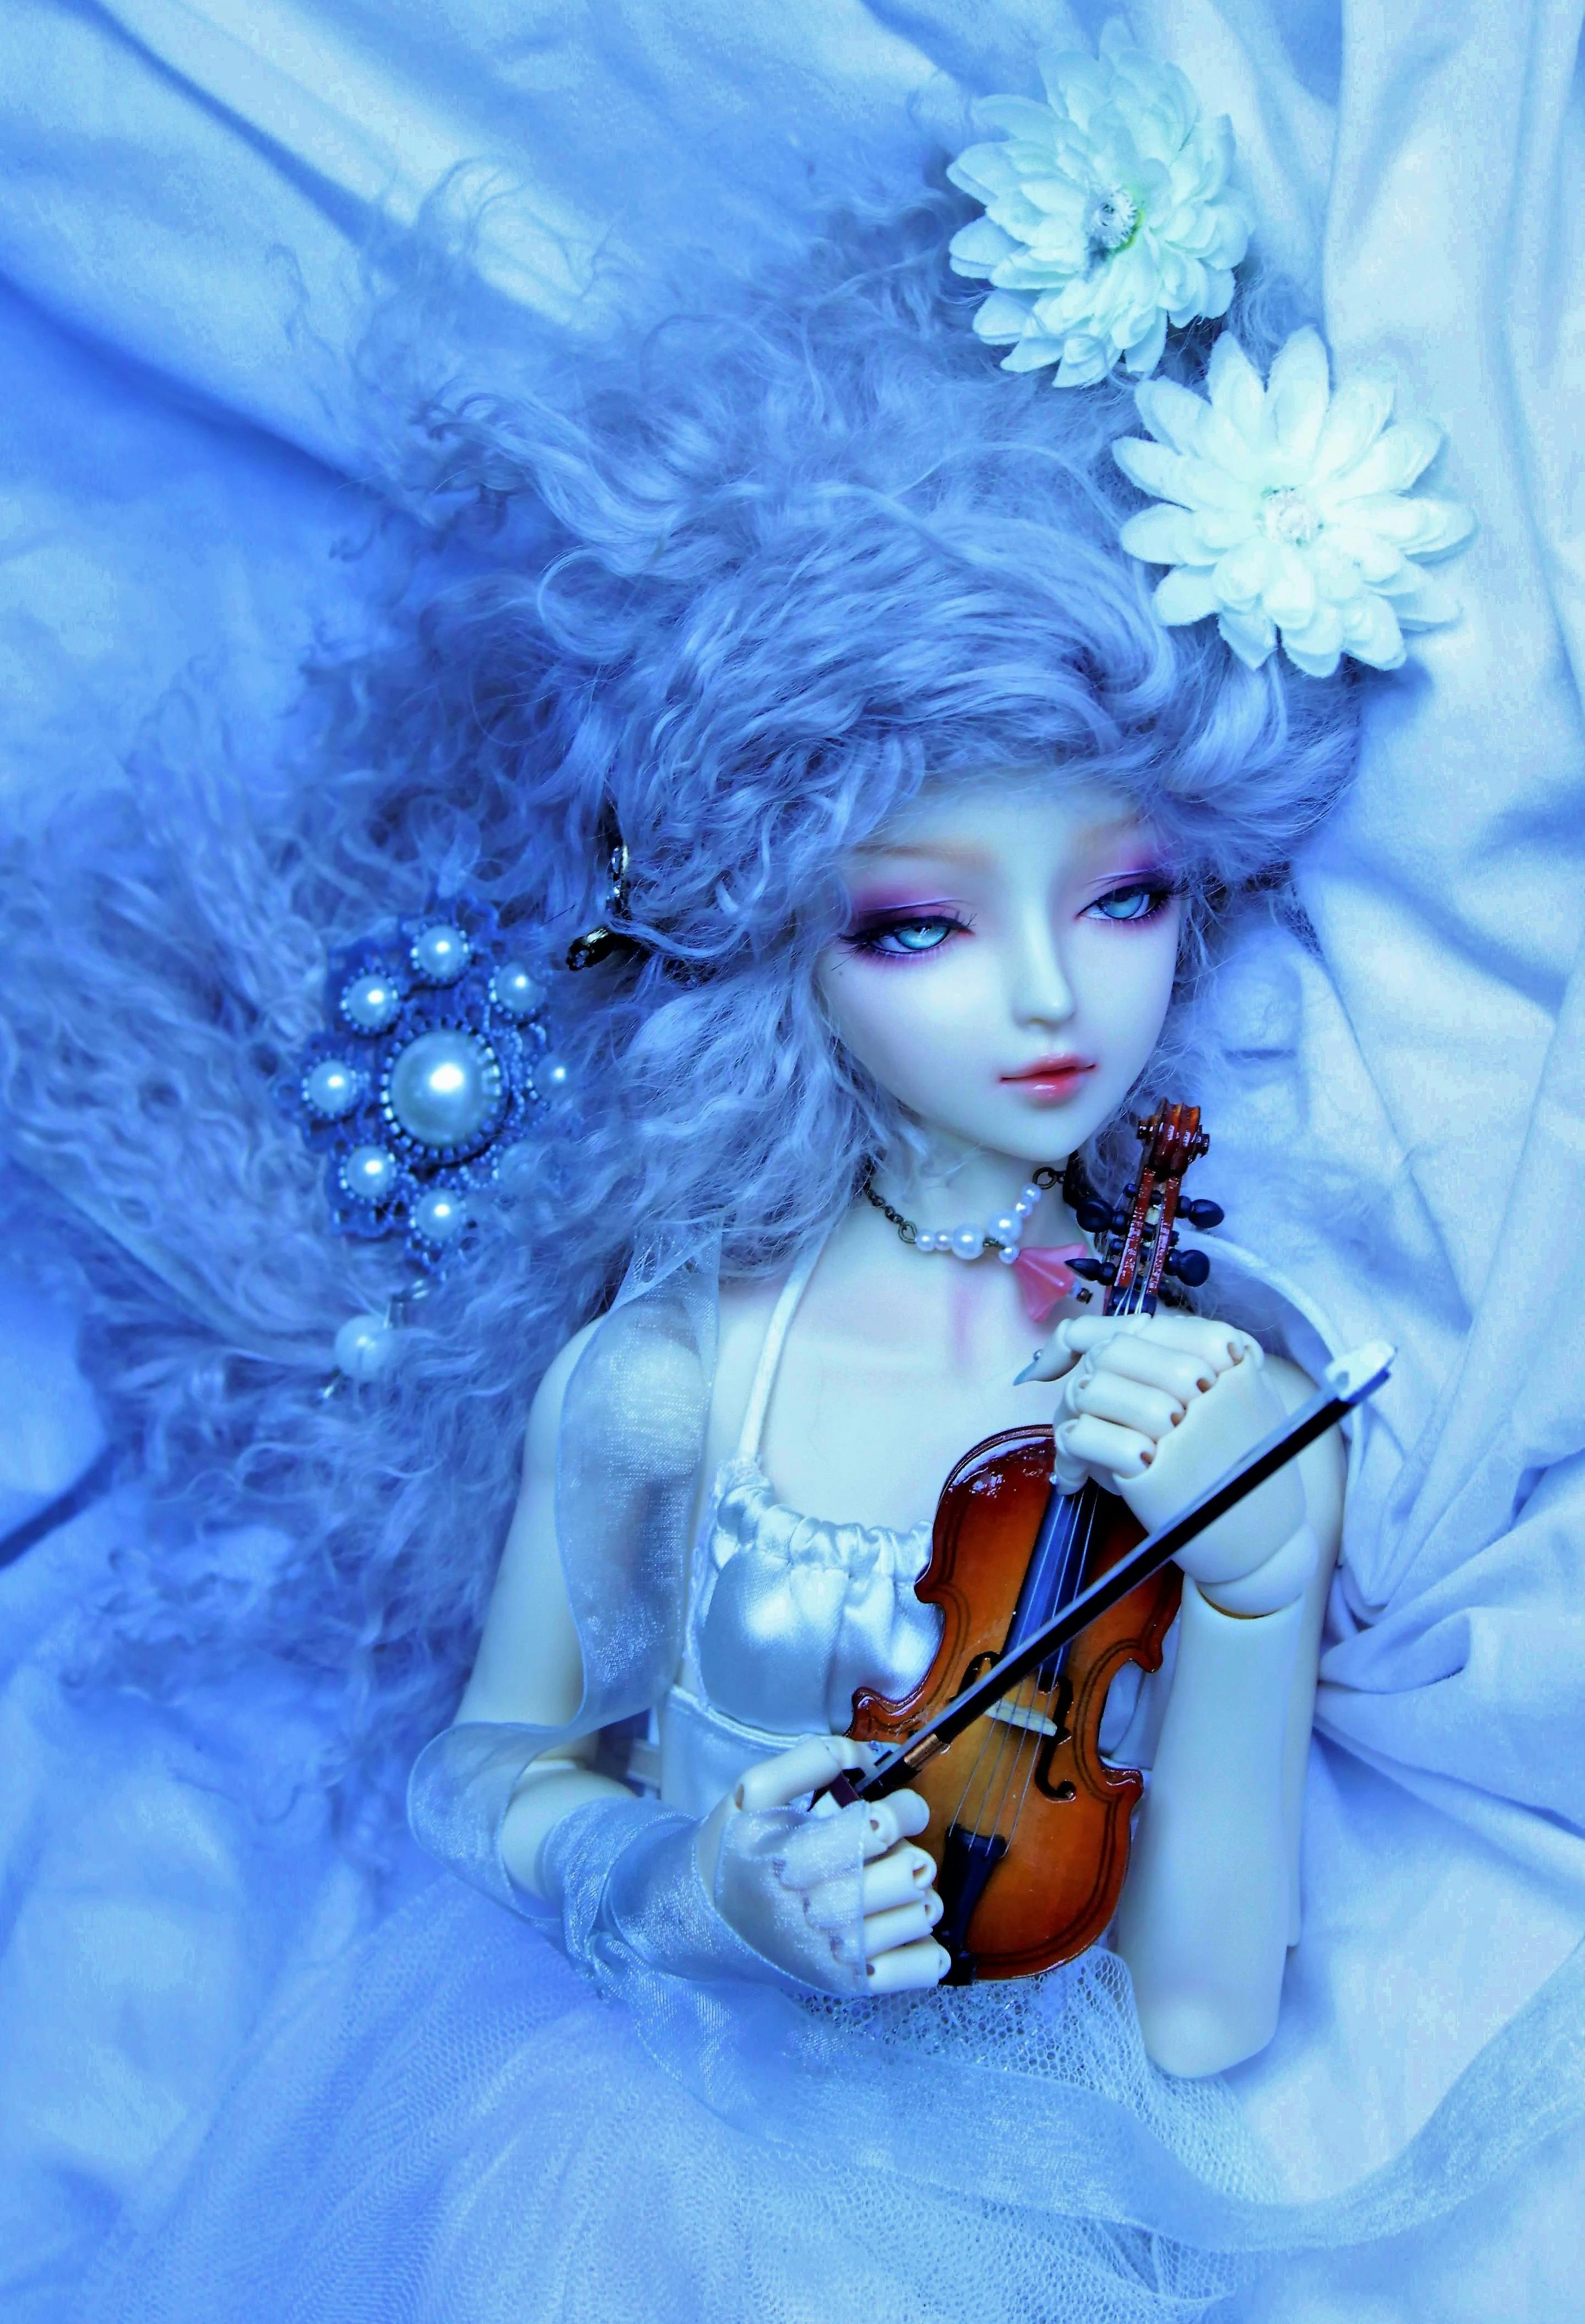 バイオリン 人形 壁紙の無料の写真素材